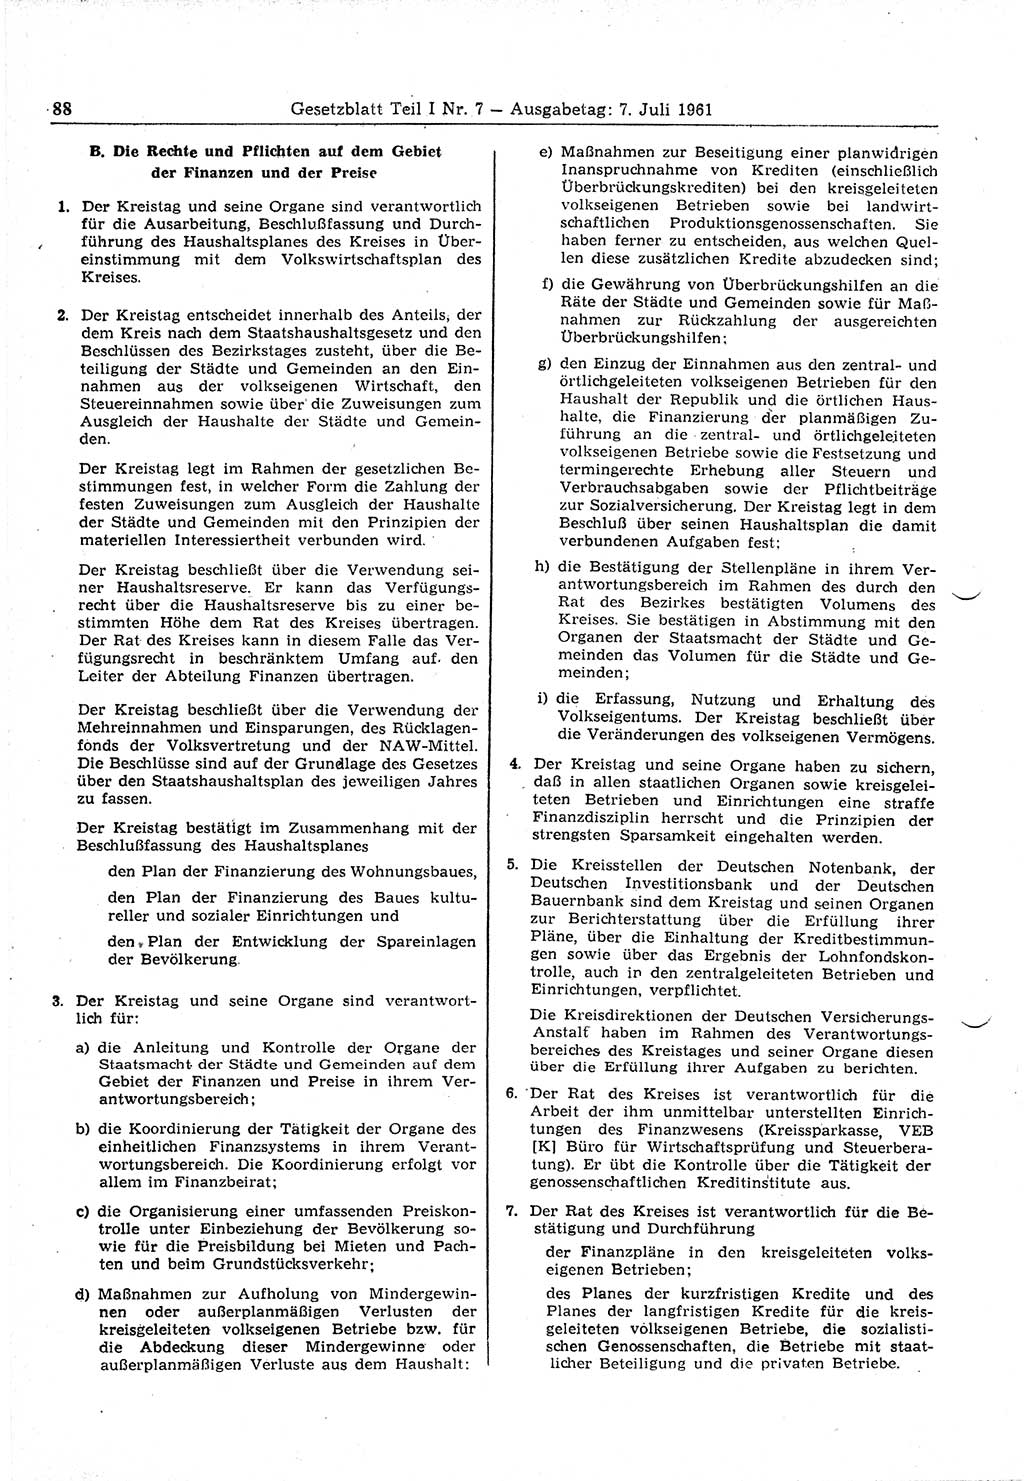 Gesetzblatt (GBl.) der Deutschen Demokratischen Republik (DDR) Teil Ⅰ 1961, Seite 88 (GBl. DDR Ⅰ 1961, S. 88)